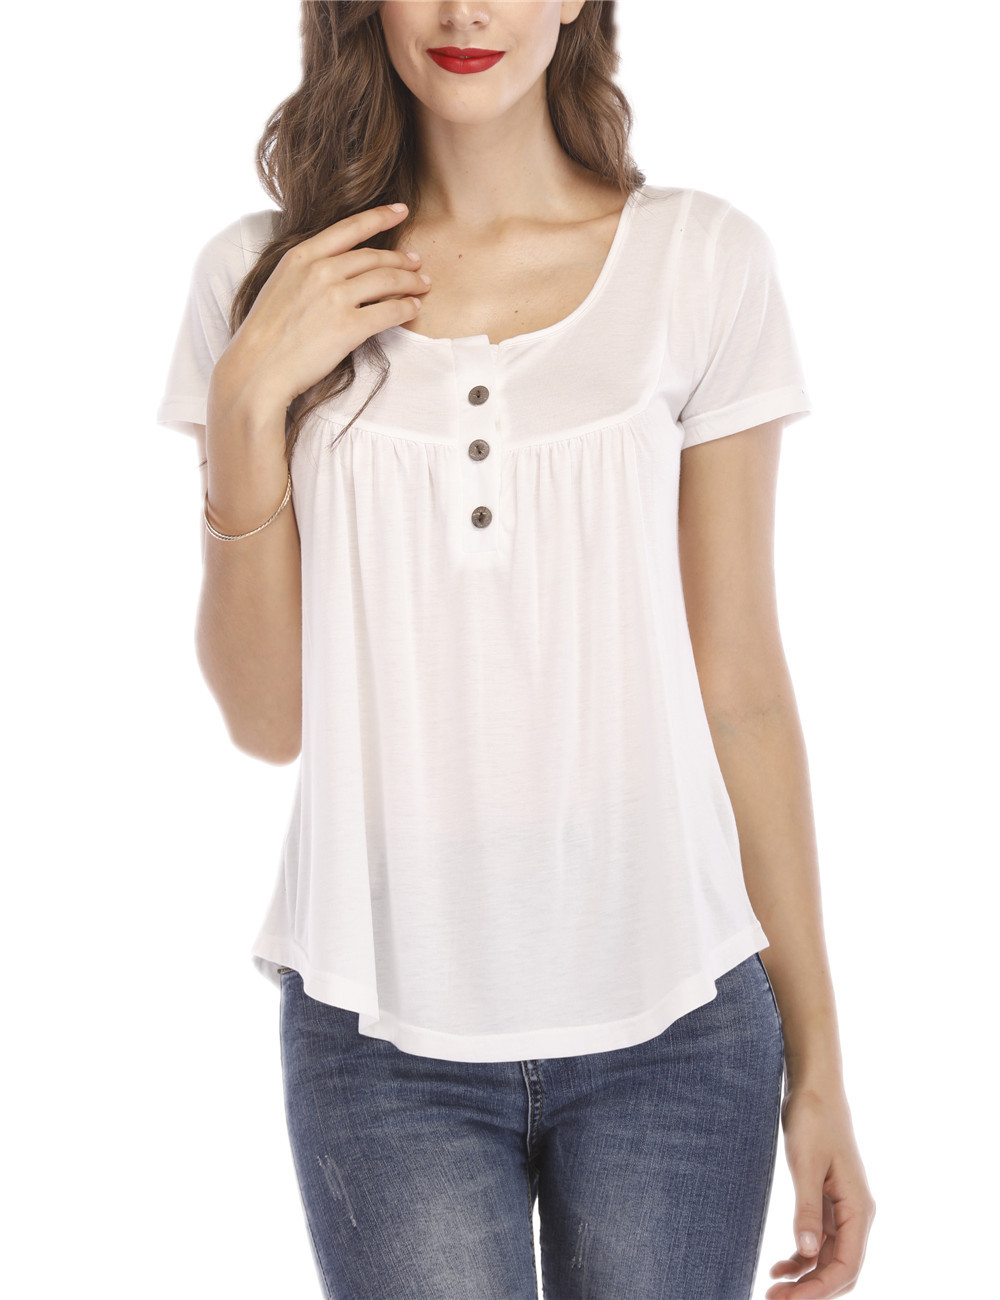 Chouzhe buckle T-shirt loose tops for women